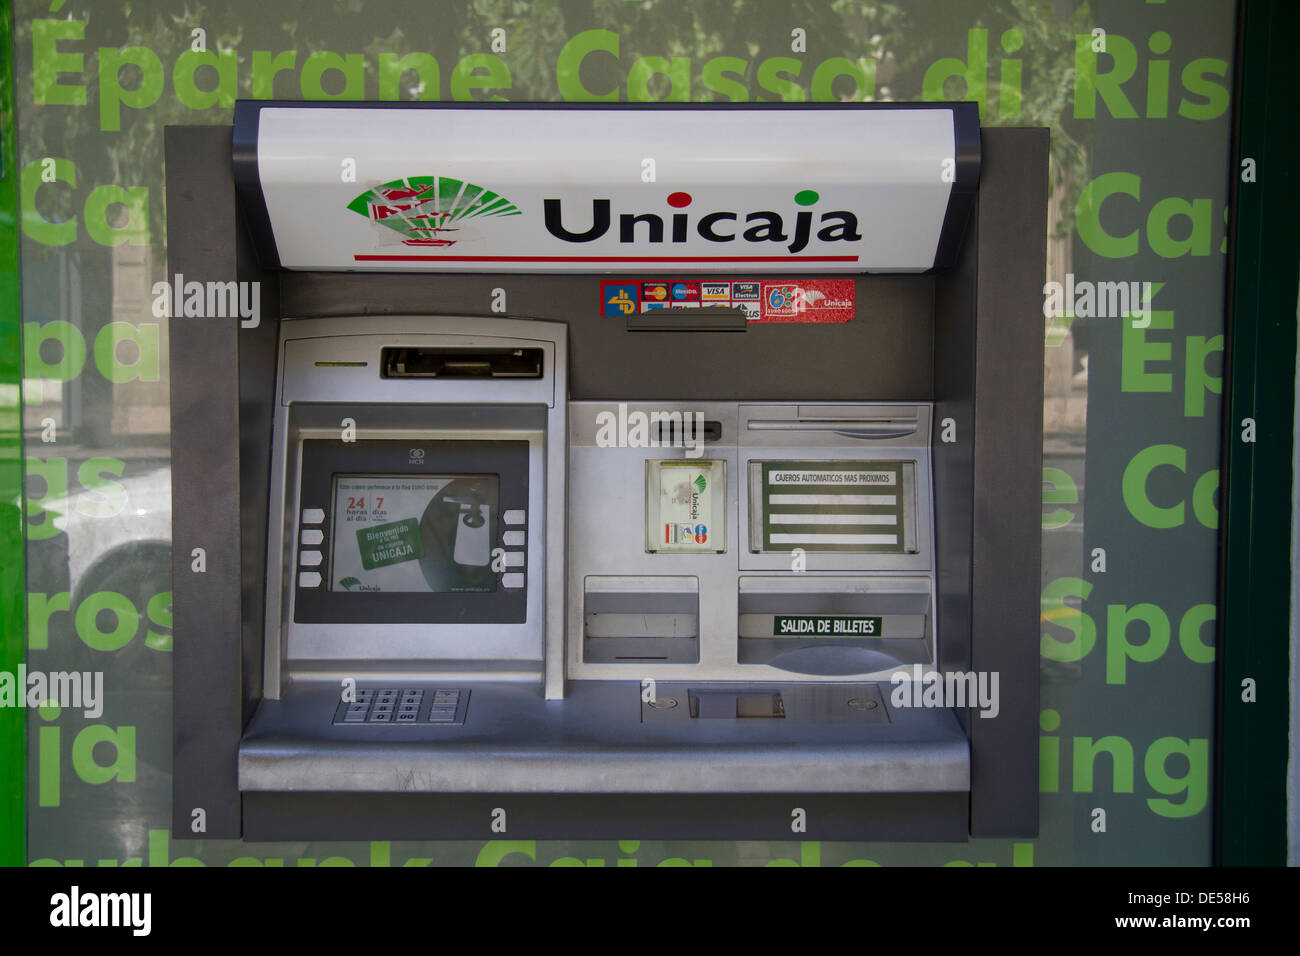 Cajero automático ATM español Unicaja en Alicante Fotografía de stock -  Alamy